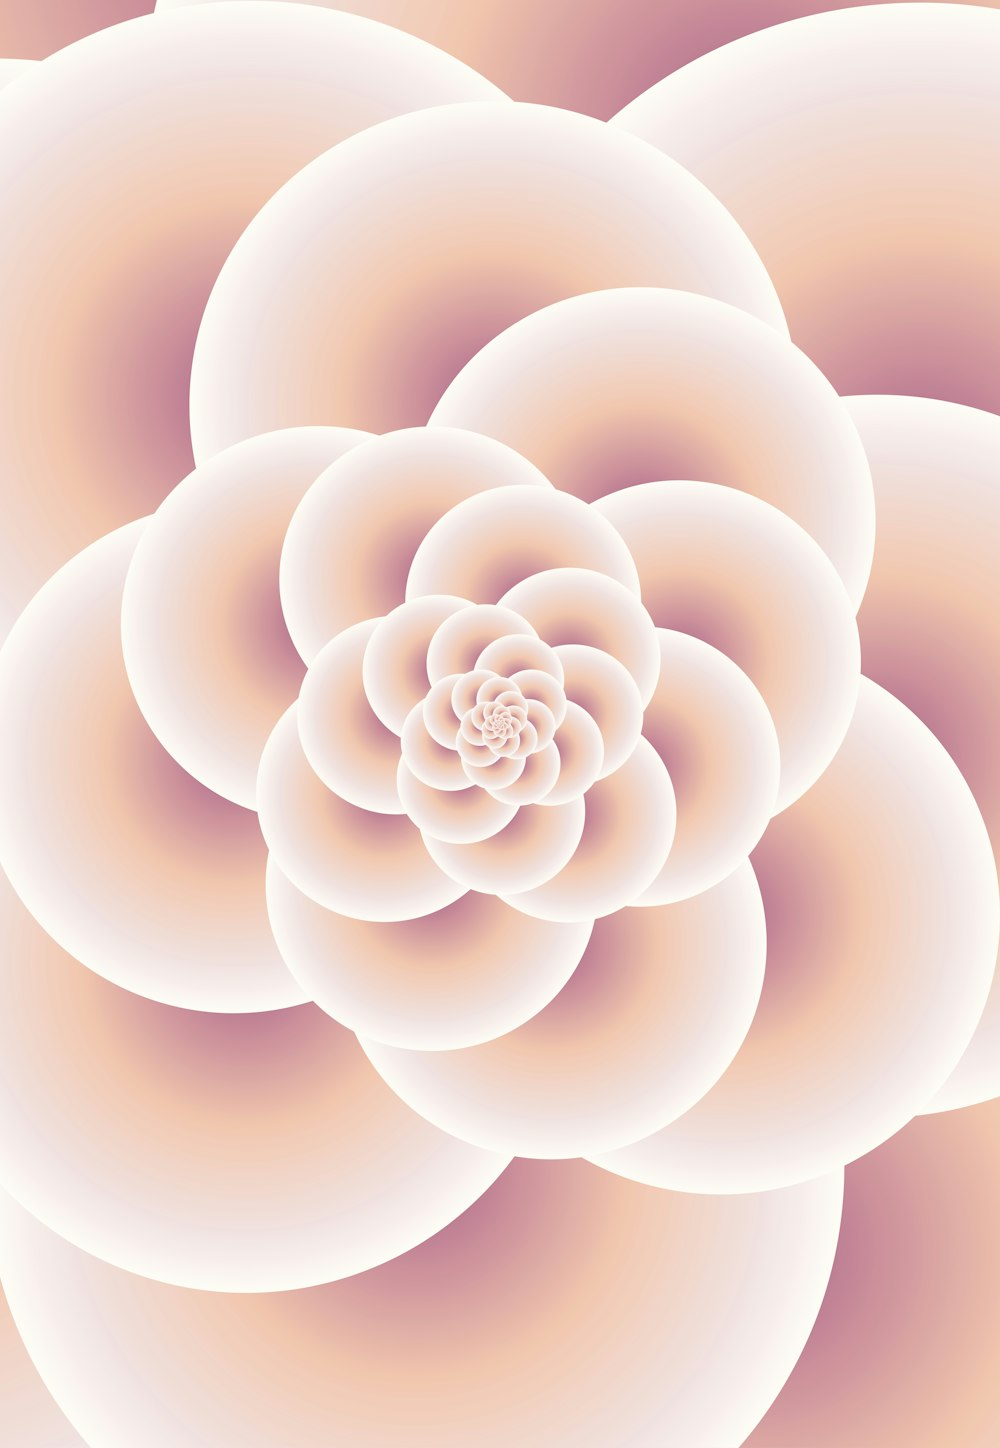 Una imagen generada por computadora de una flor rosa